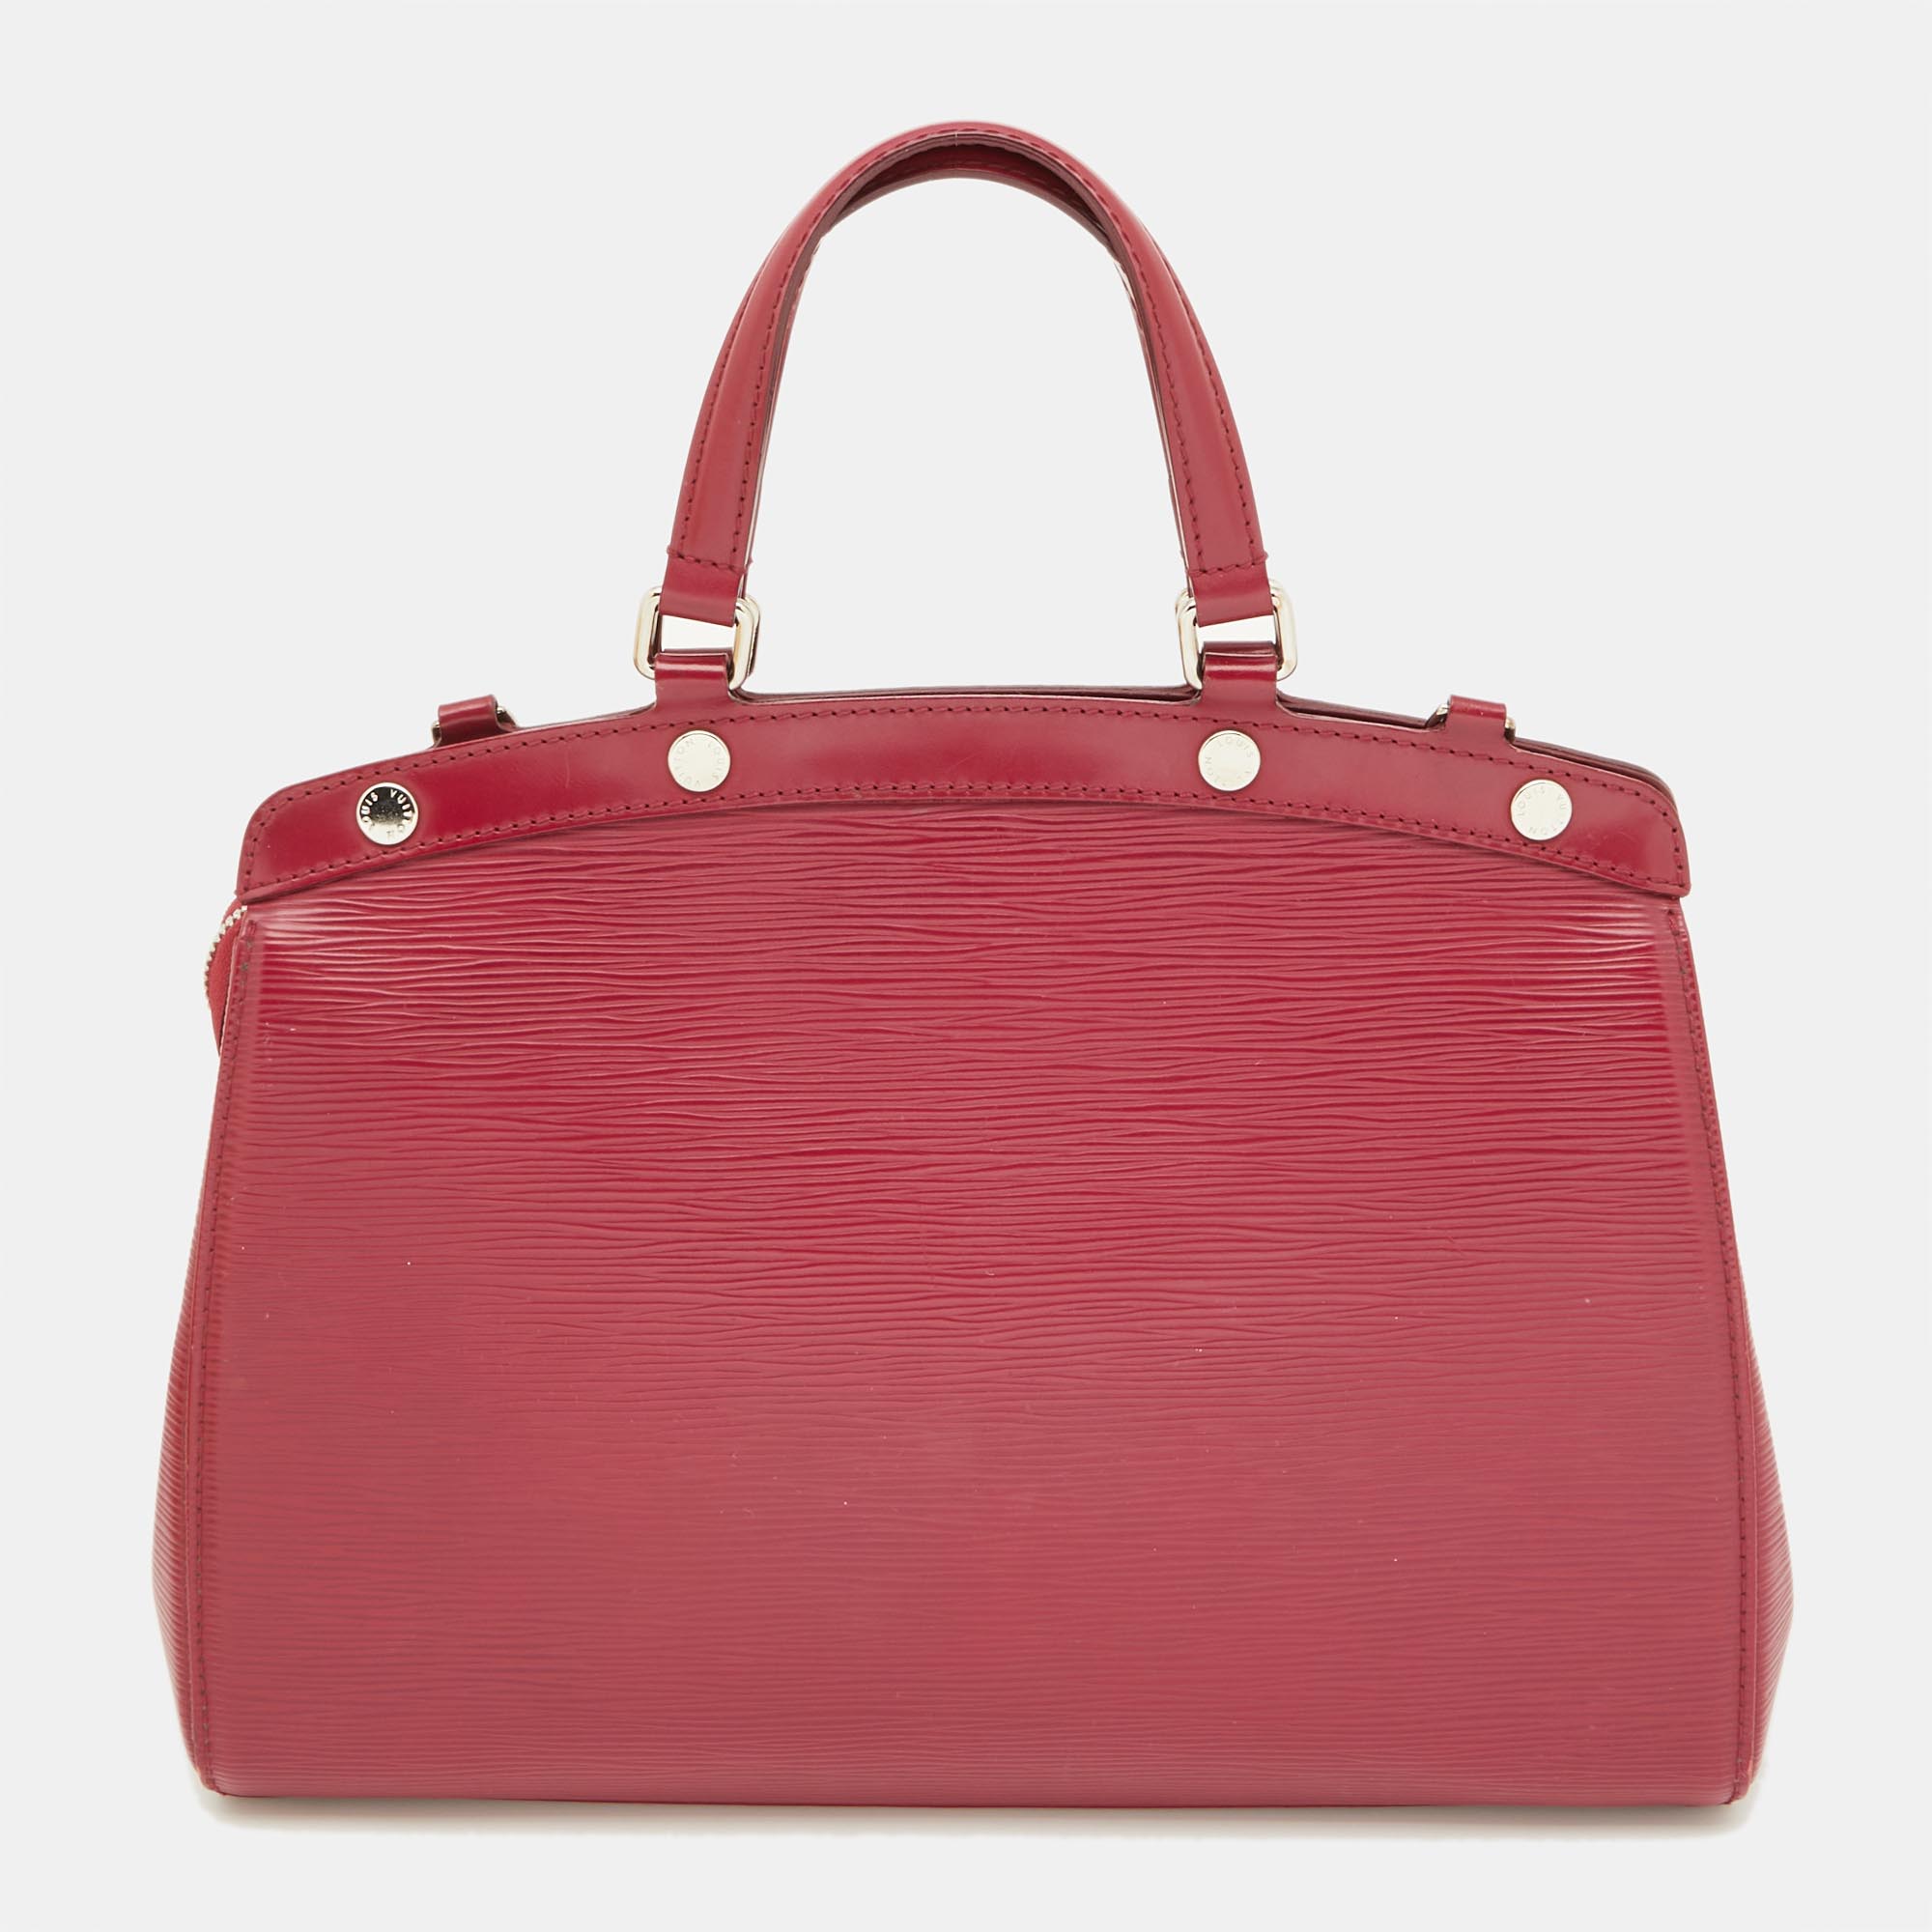 Louis Vuitton Fuchsia Epi Leather Brea MM Bag